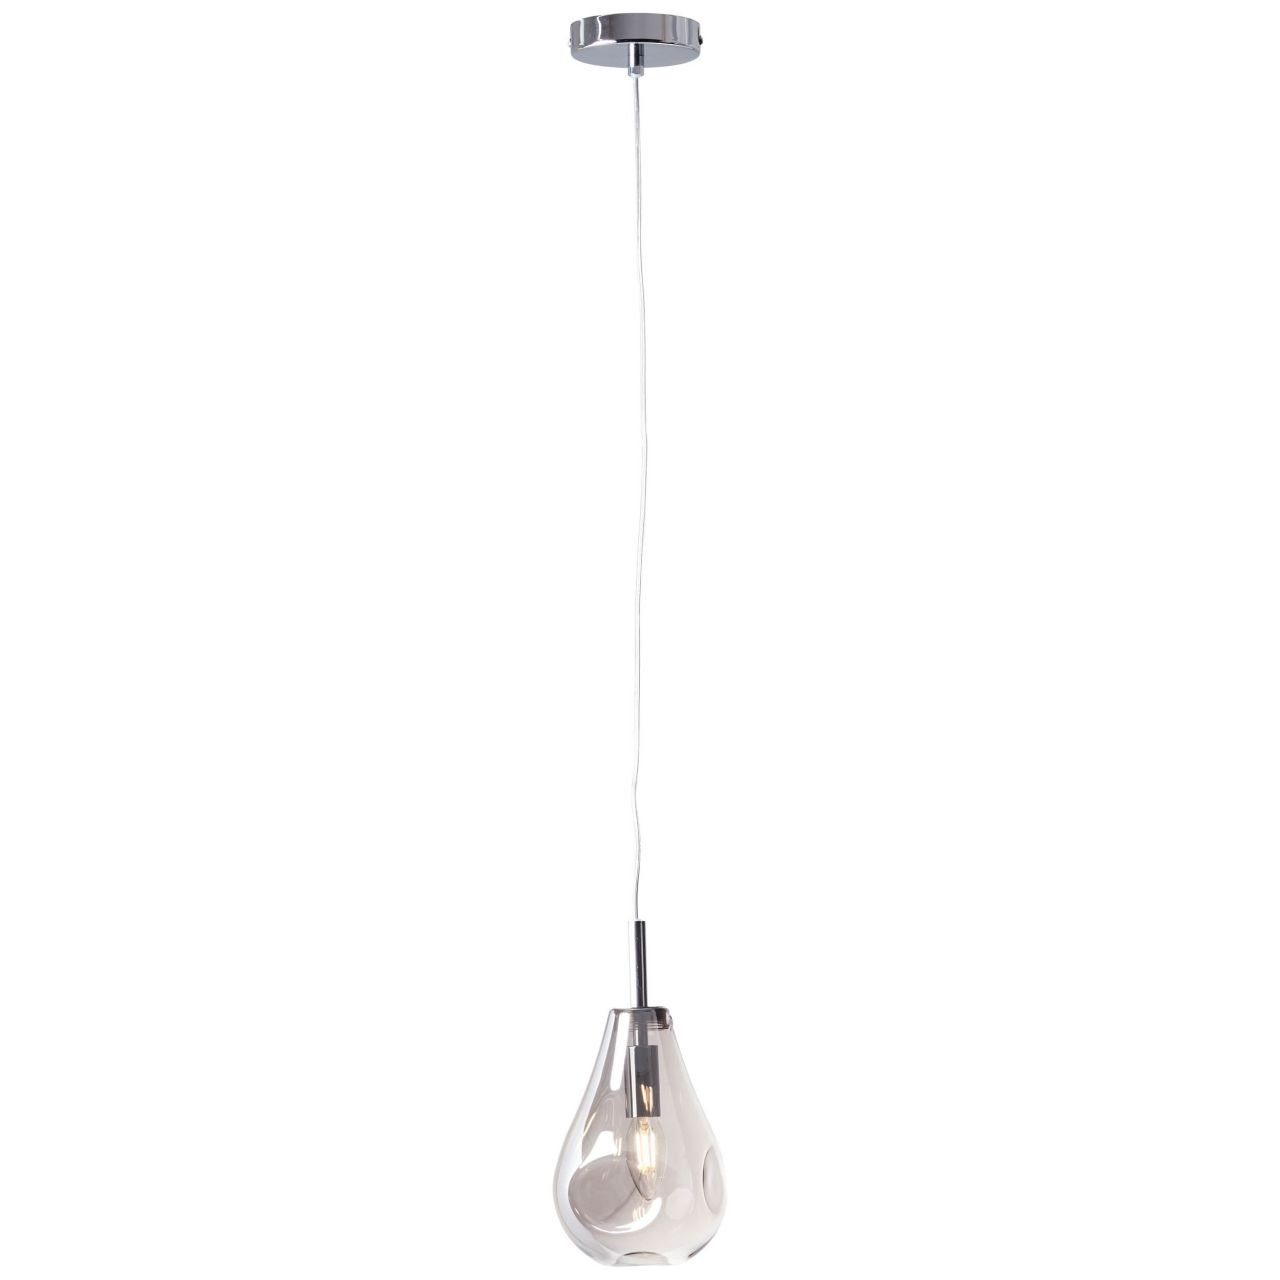 Exquisites Design Brilliant Pendelleuchte Drops, Lampe, Drops D45 rauchglas/chrom, 1x Pendelleuchte Glas/Metall, 1flg